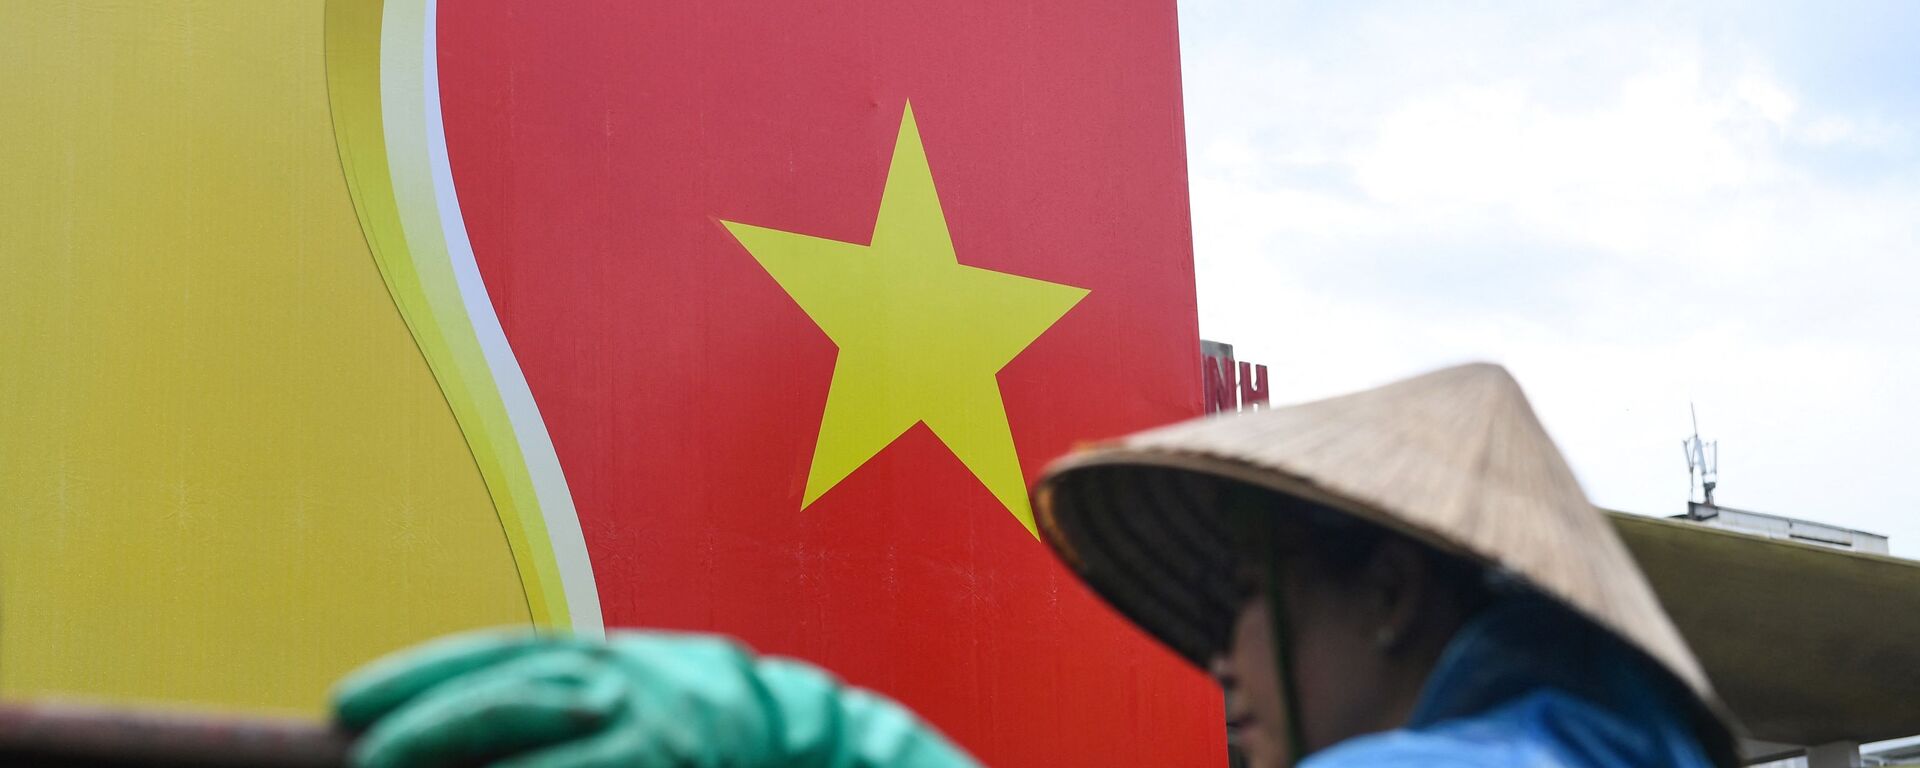 Quốc kỳ Việt Nam. - Sputnik Việt Nam, 1920, 23.02.2022